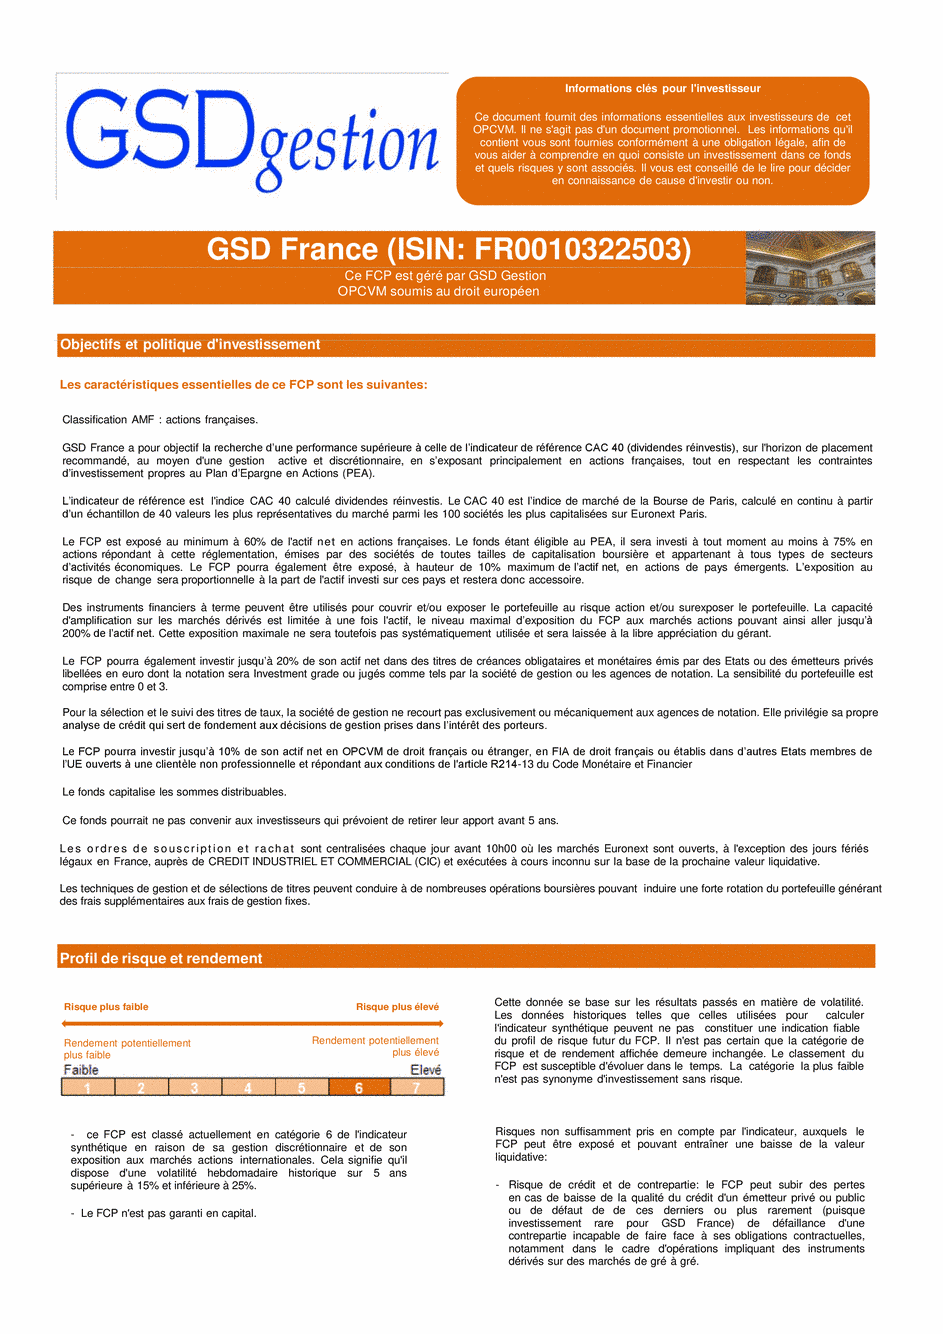 DICI-Prospectus Complet GSD France - 12/01/2021 - Français